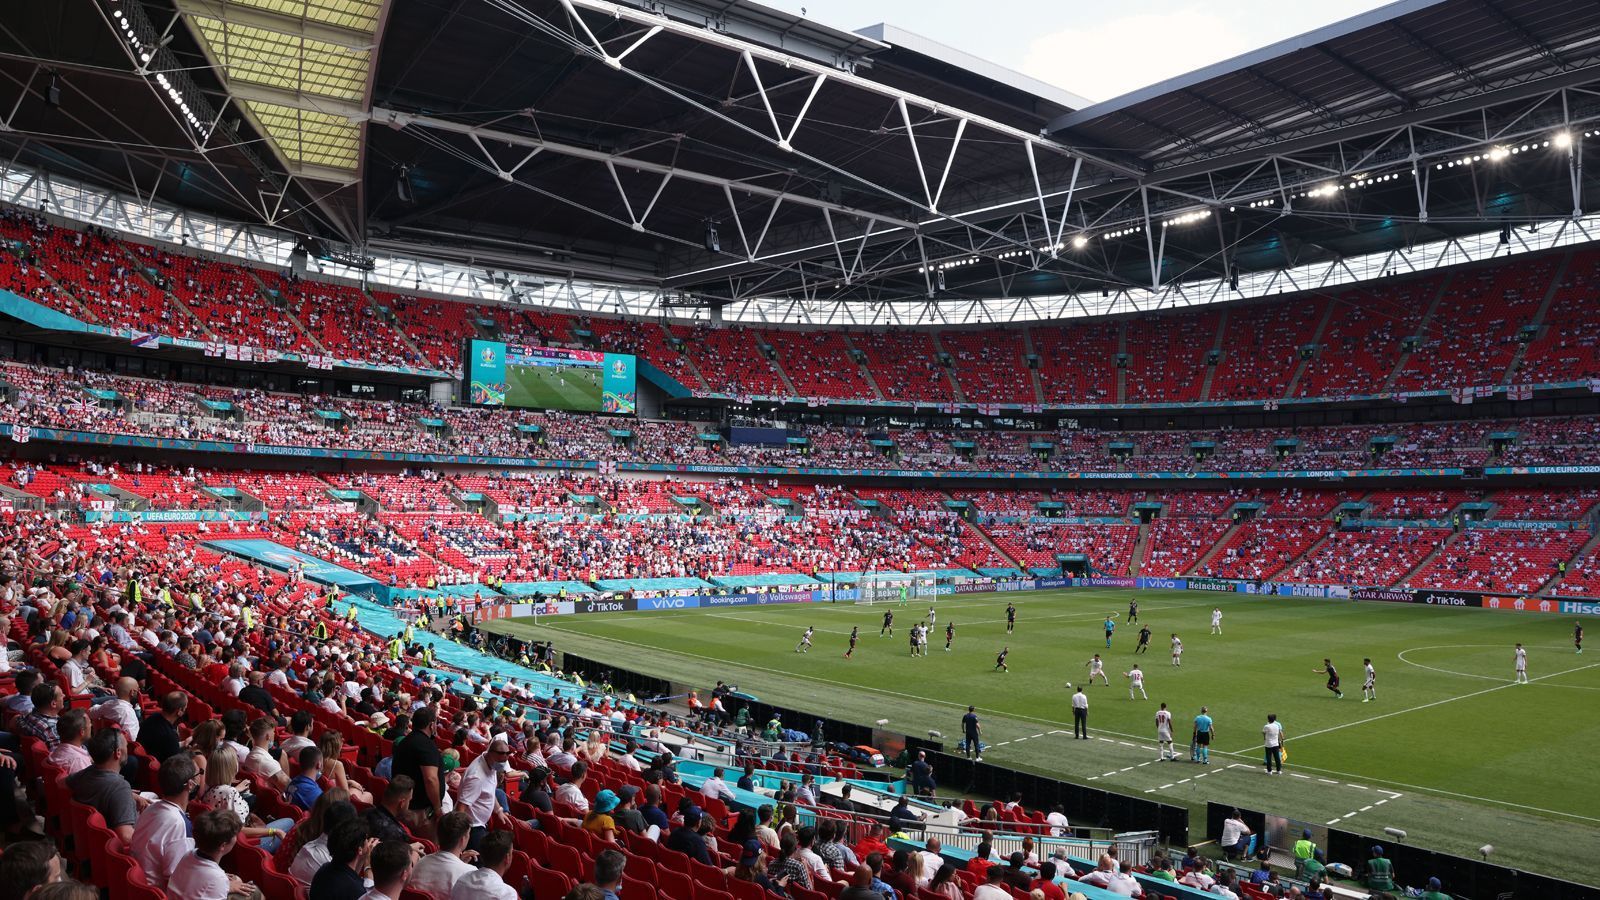 
                <strong>Wembleystadion London</strong><br>
                Bei der Fußball-EM begann Tag 3 im Londoner Wembleystadion mit der Partie zwischen England und Kroatien. 22.500 Zuschauern waren im Stadion und sahen einen erfolgreichen EM-Auftakt der "Three Lions".
              